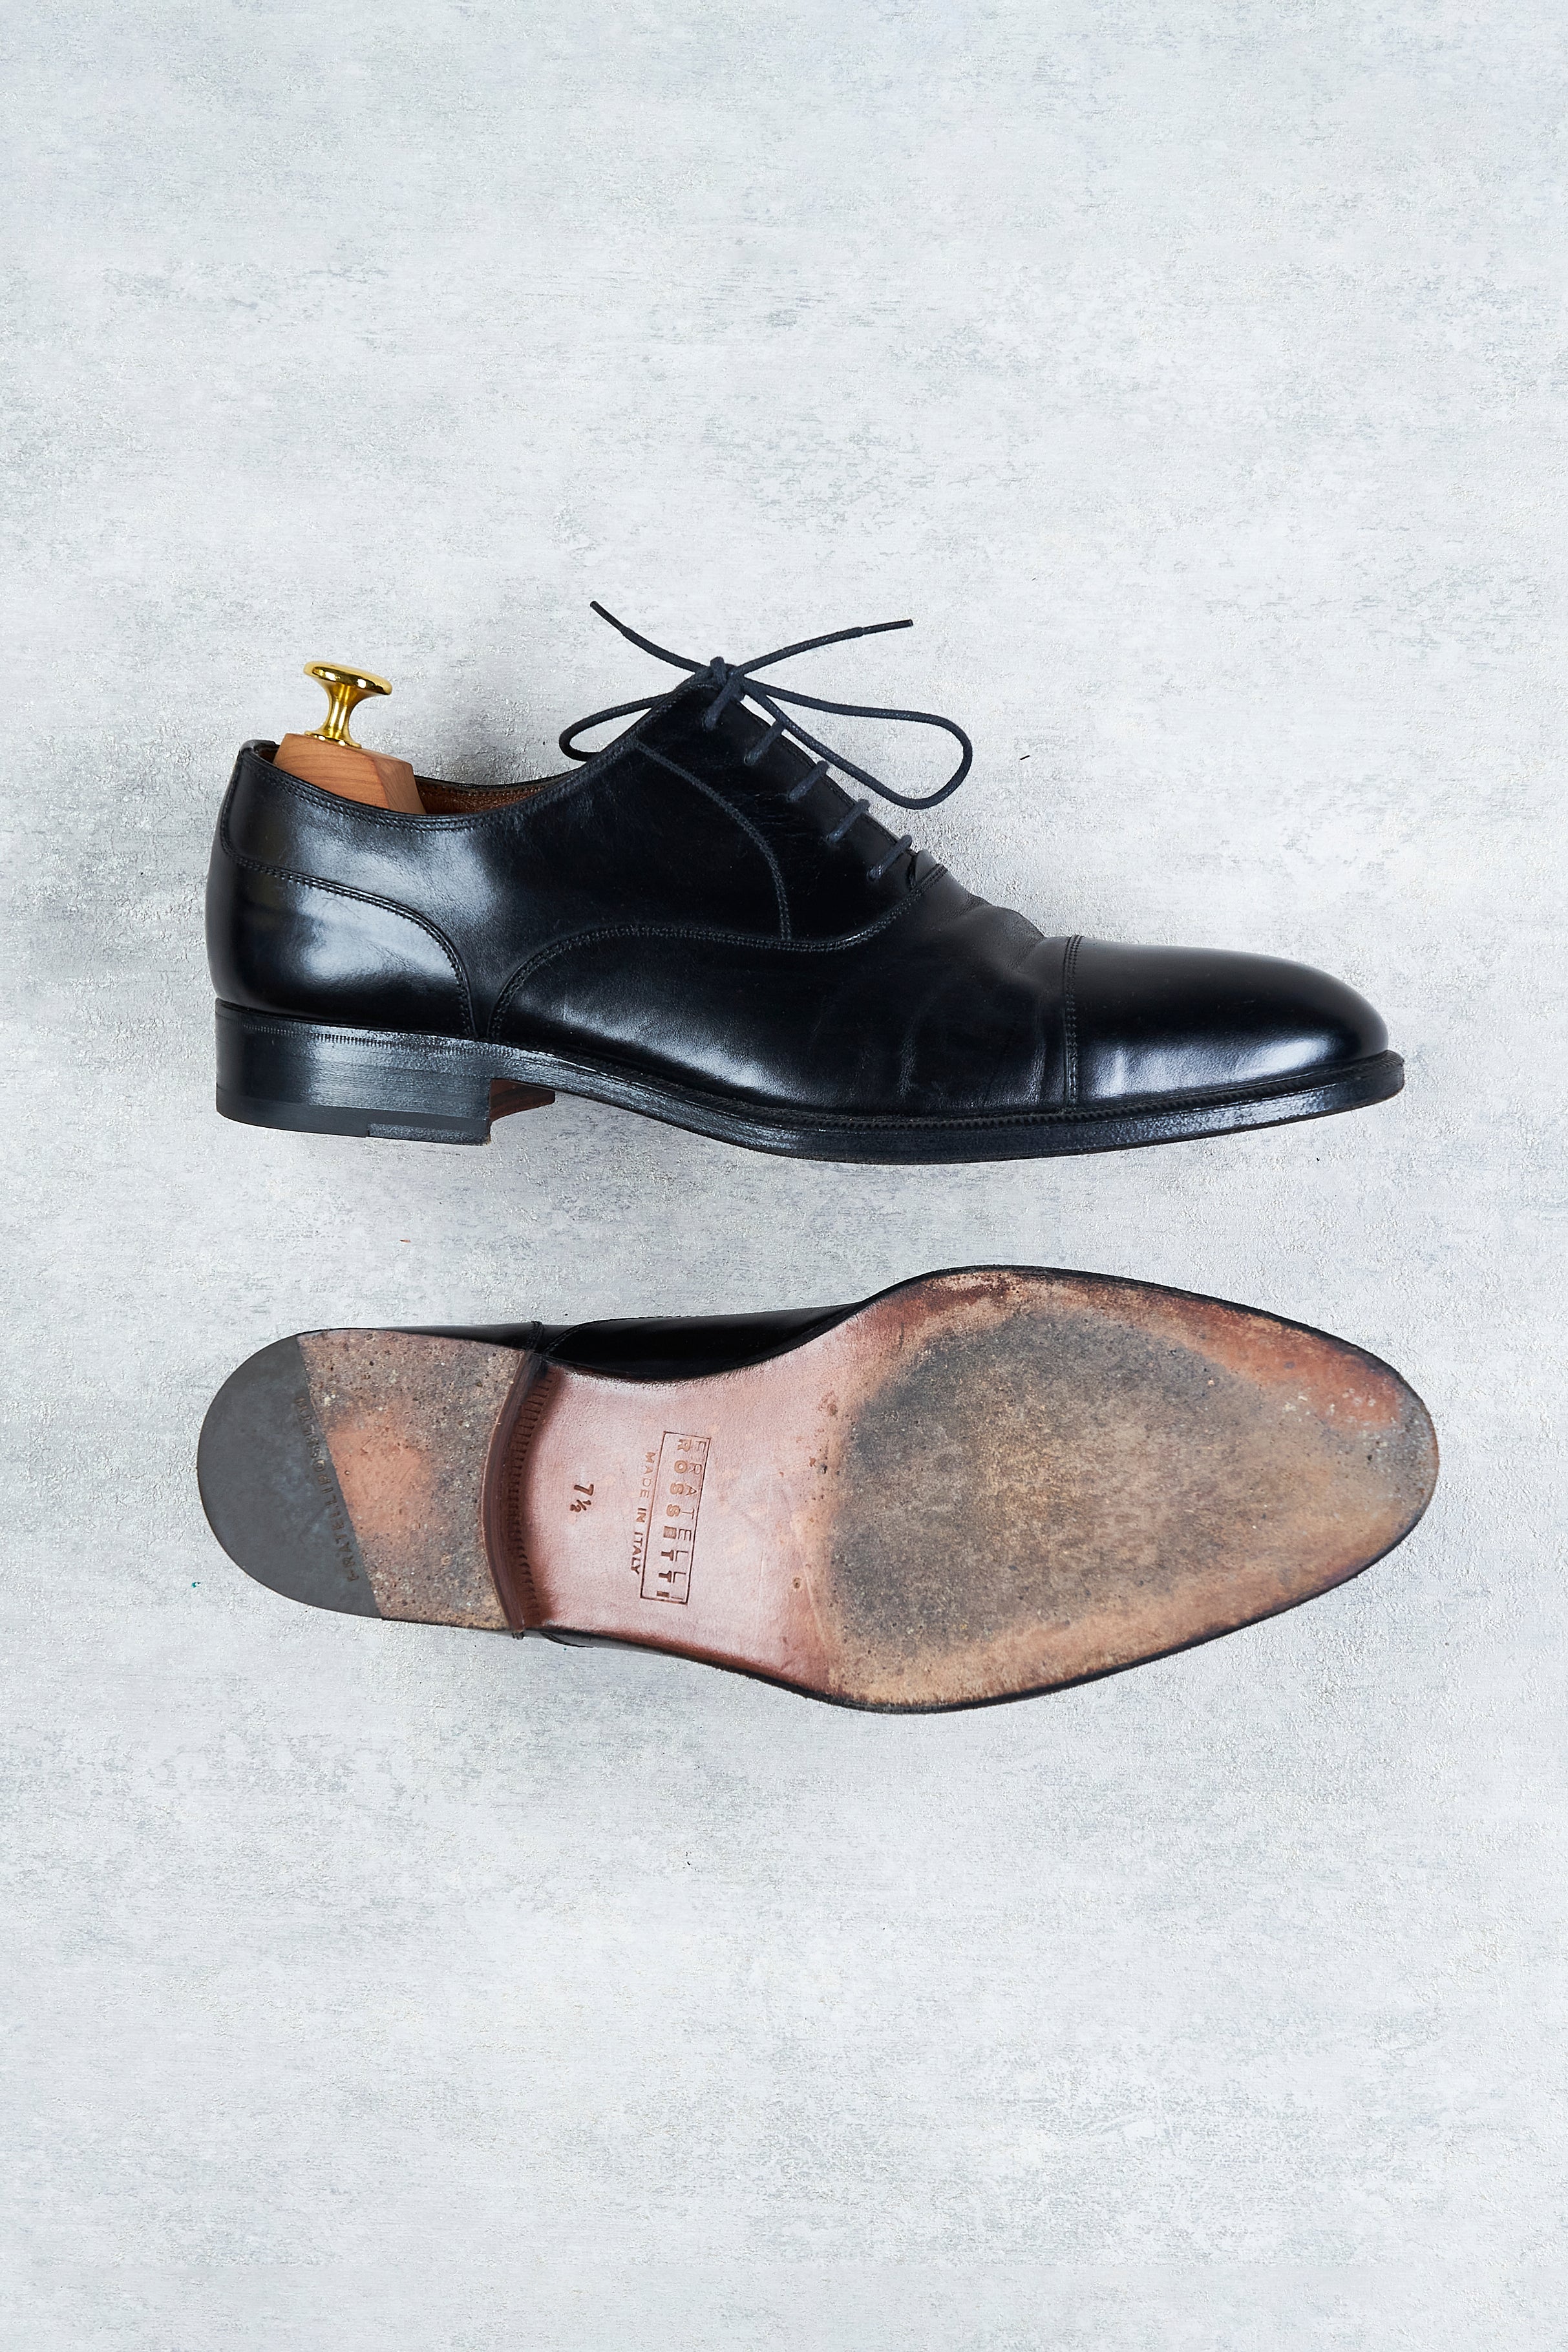 Fratelli Rosseitti Black Calf Cap-toe Oxford Shoes